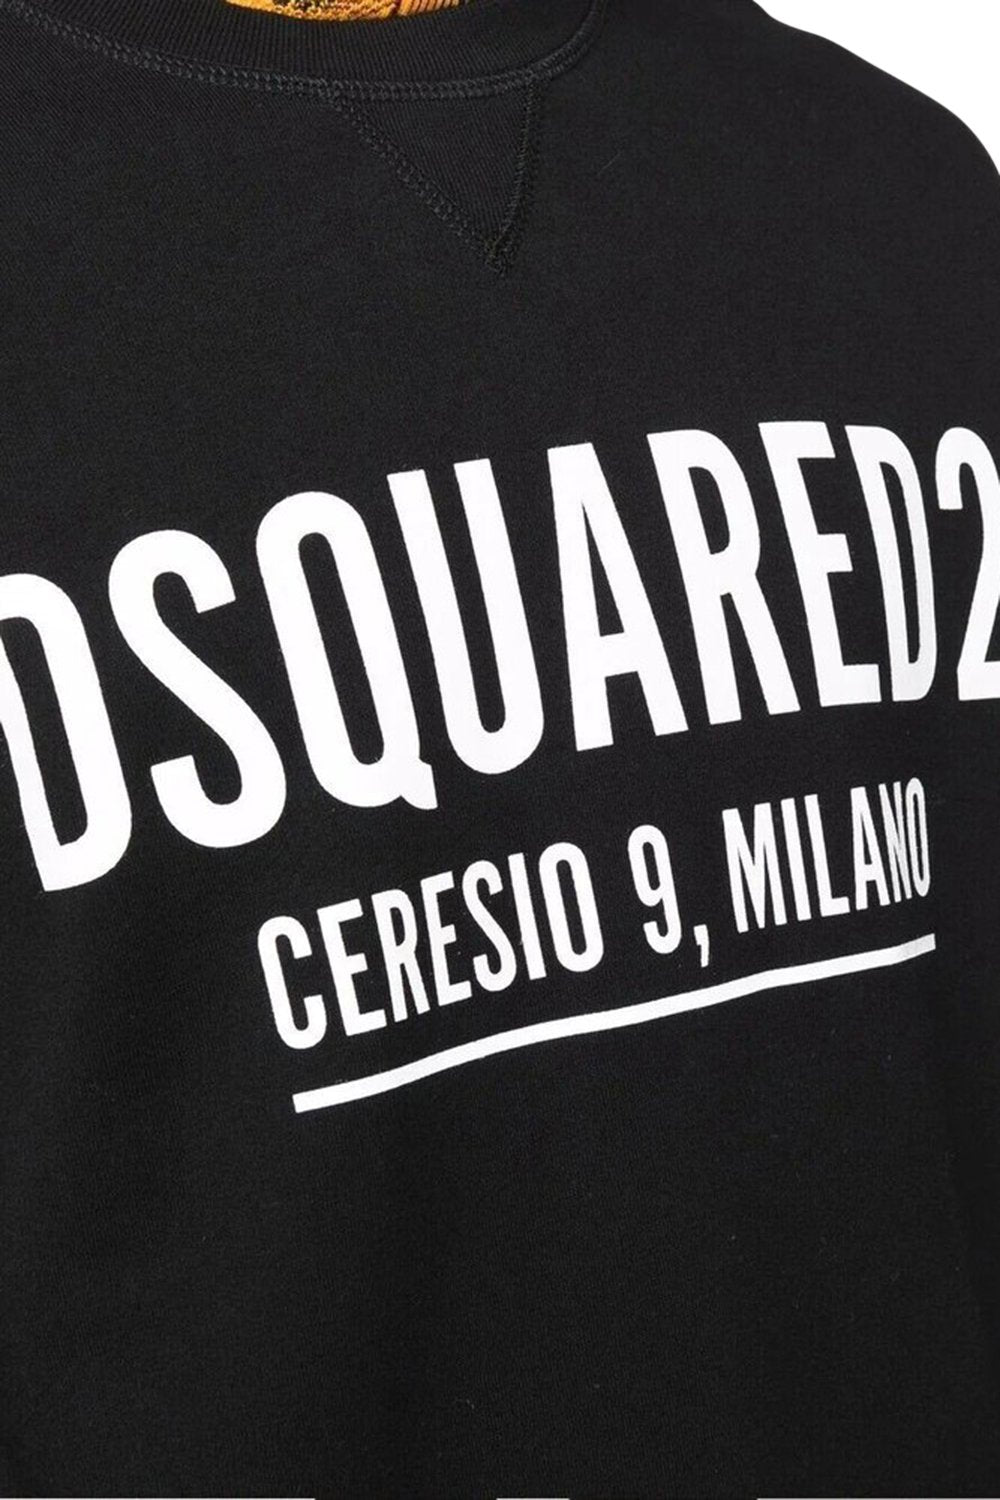 Men's Black DSquared2 Ceresio 9 Milano Sweatshirt